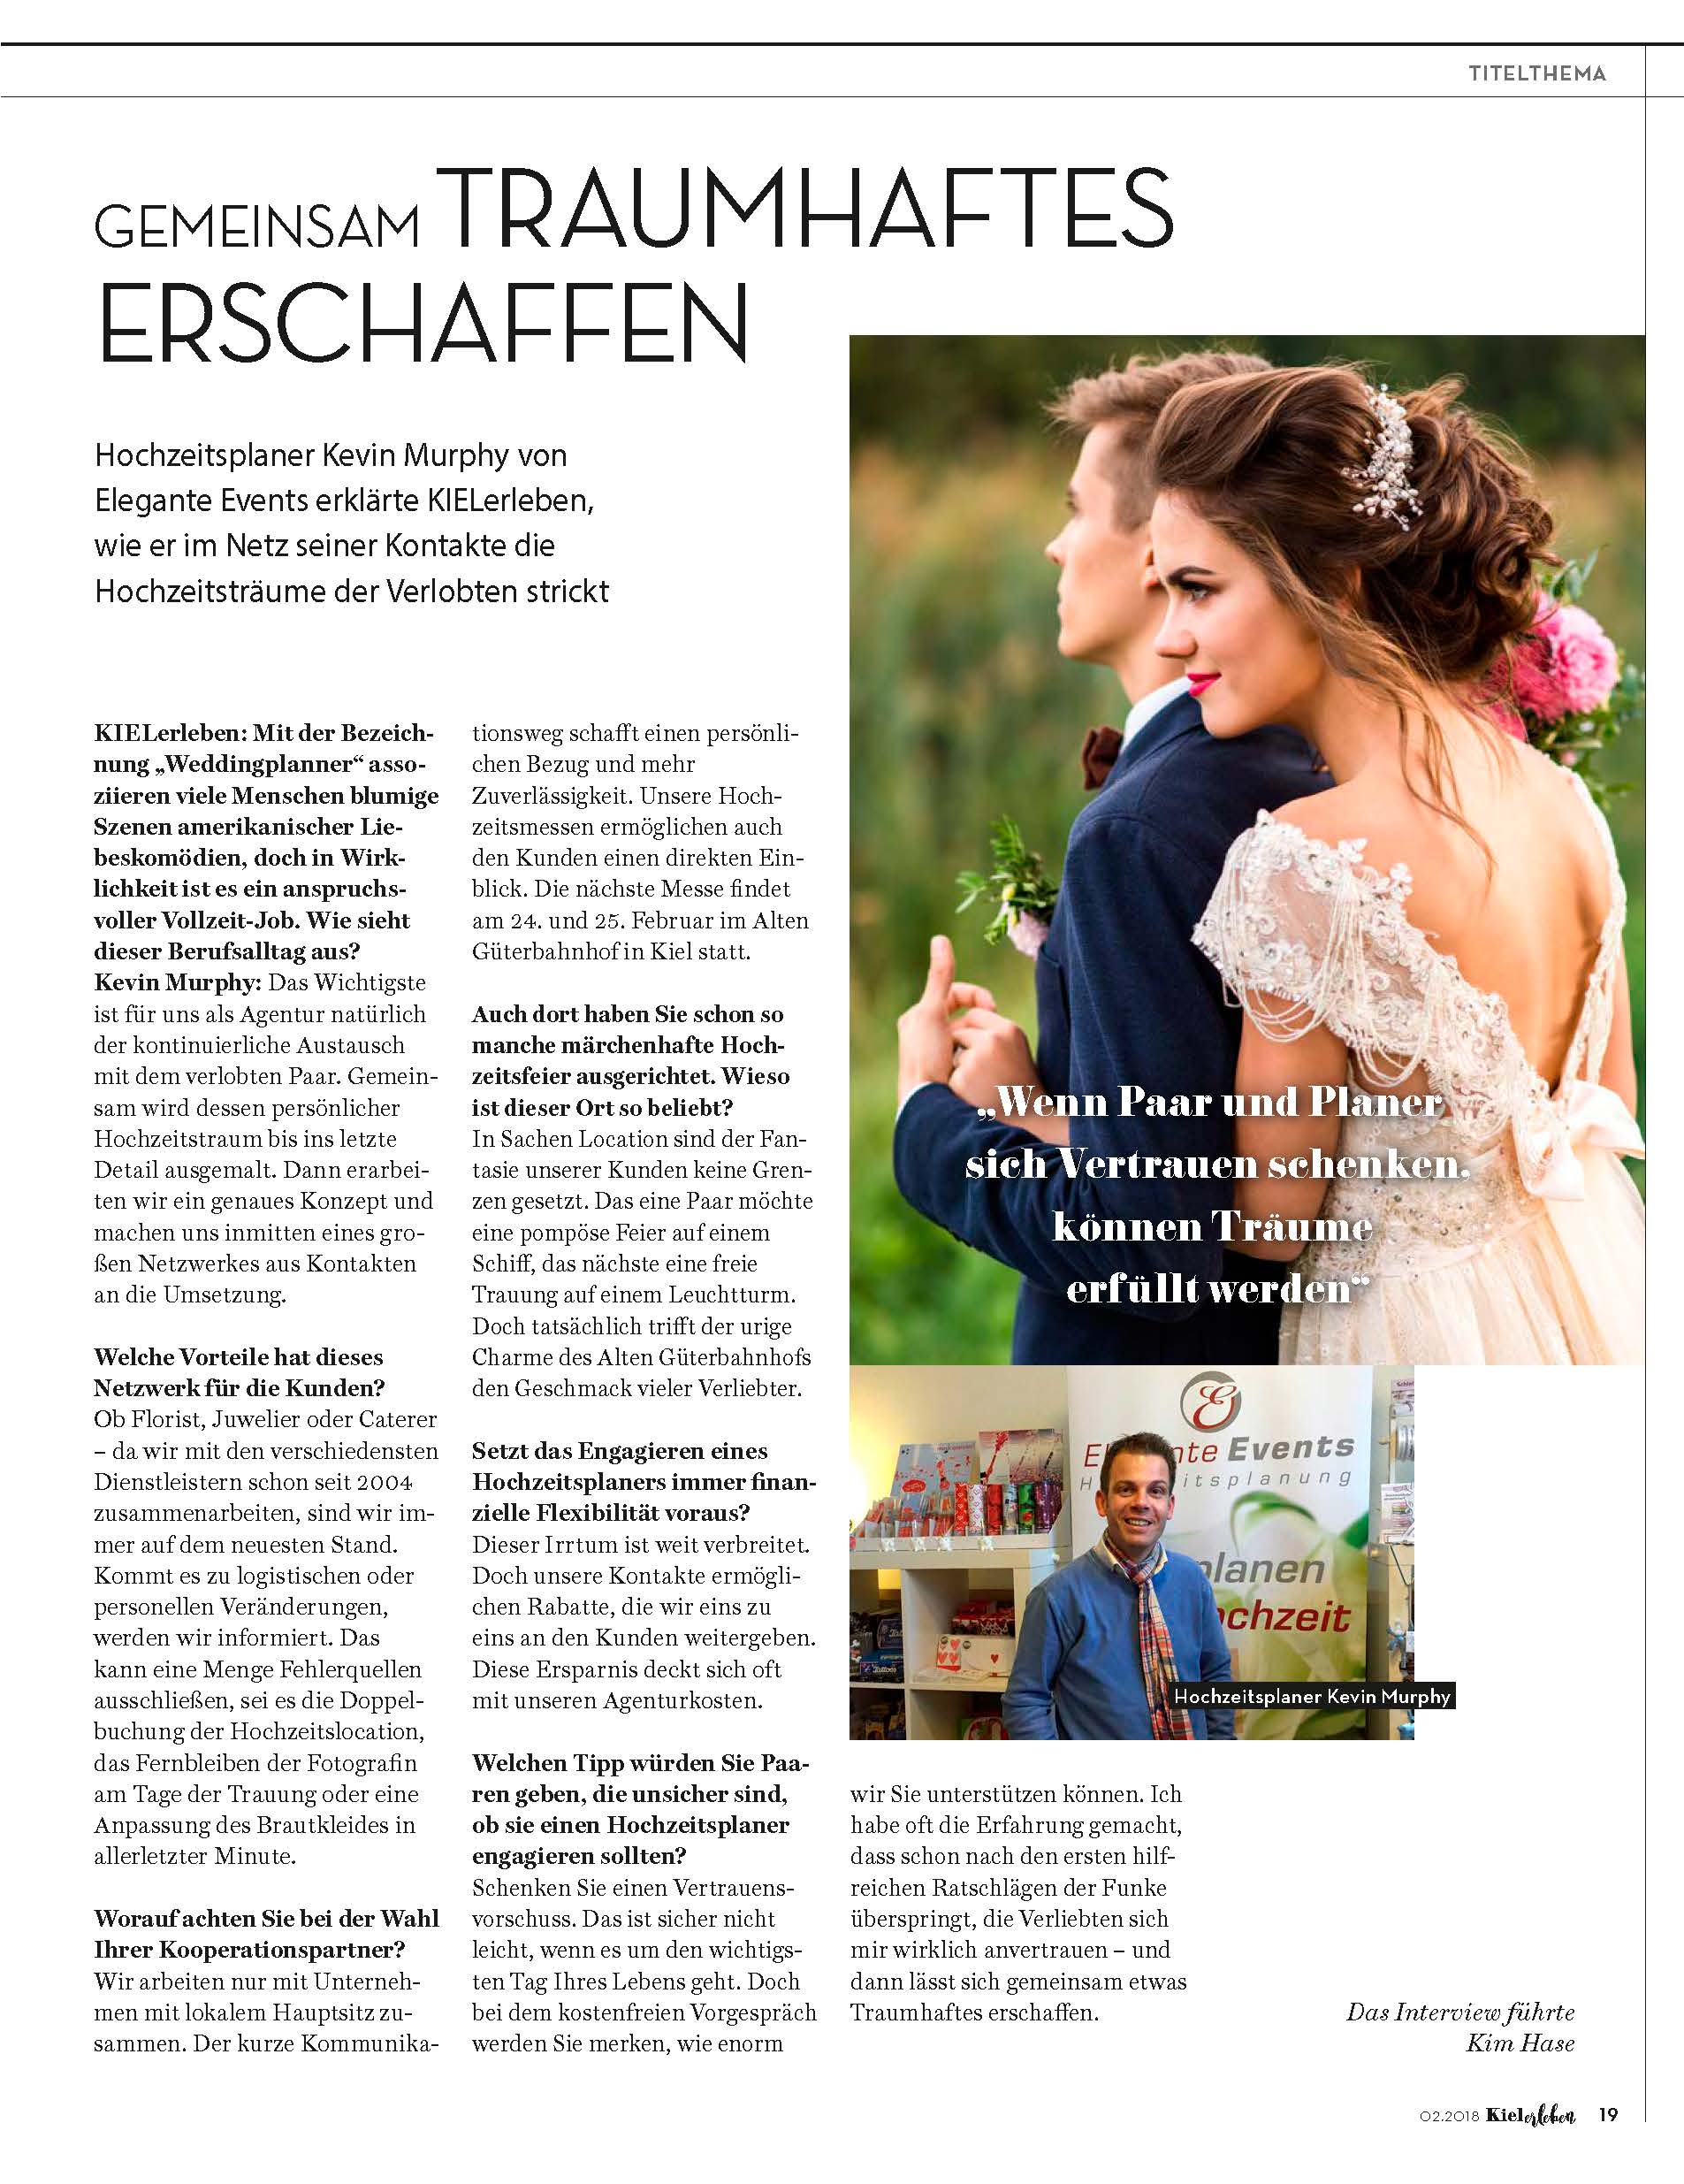 Bericht KielerLeben über Elegante Events als Hochzeitsplaner in der Ausgabe Februar 2018. Gemeinsam Traumhaftes erschaffen.